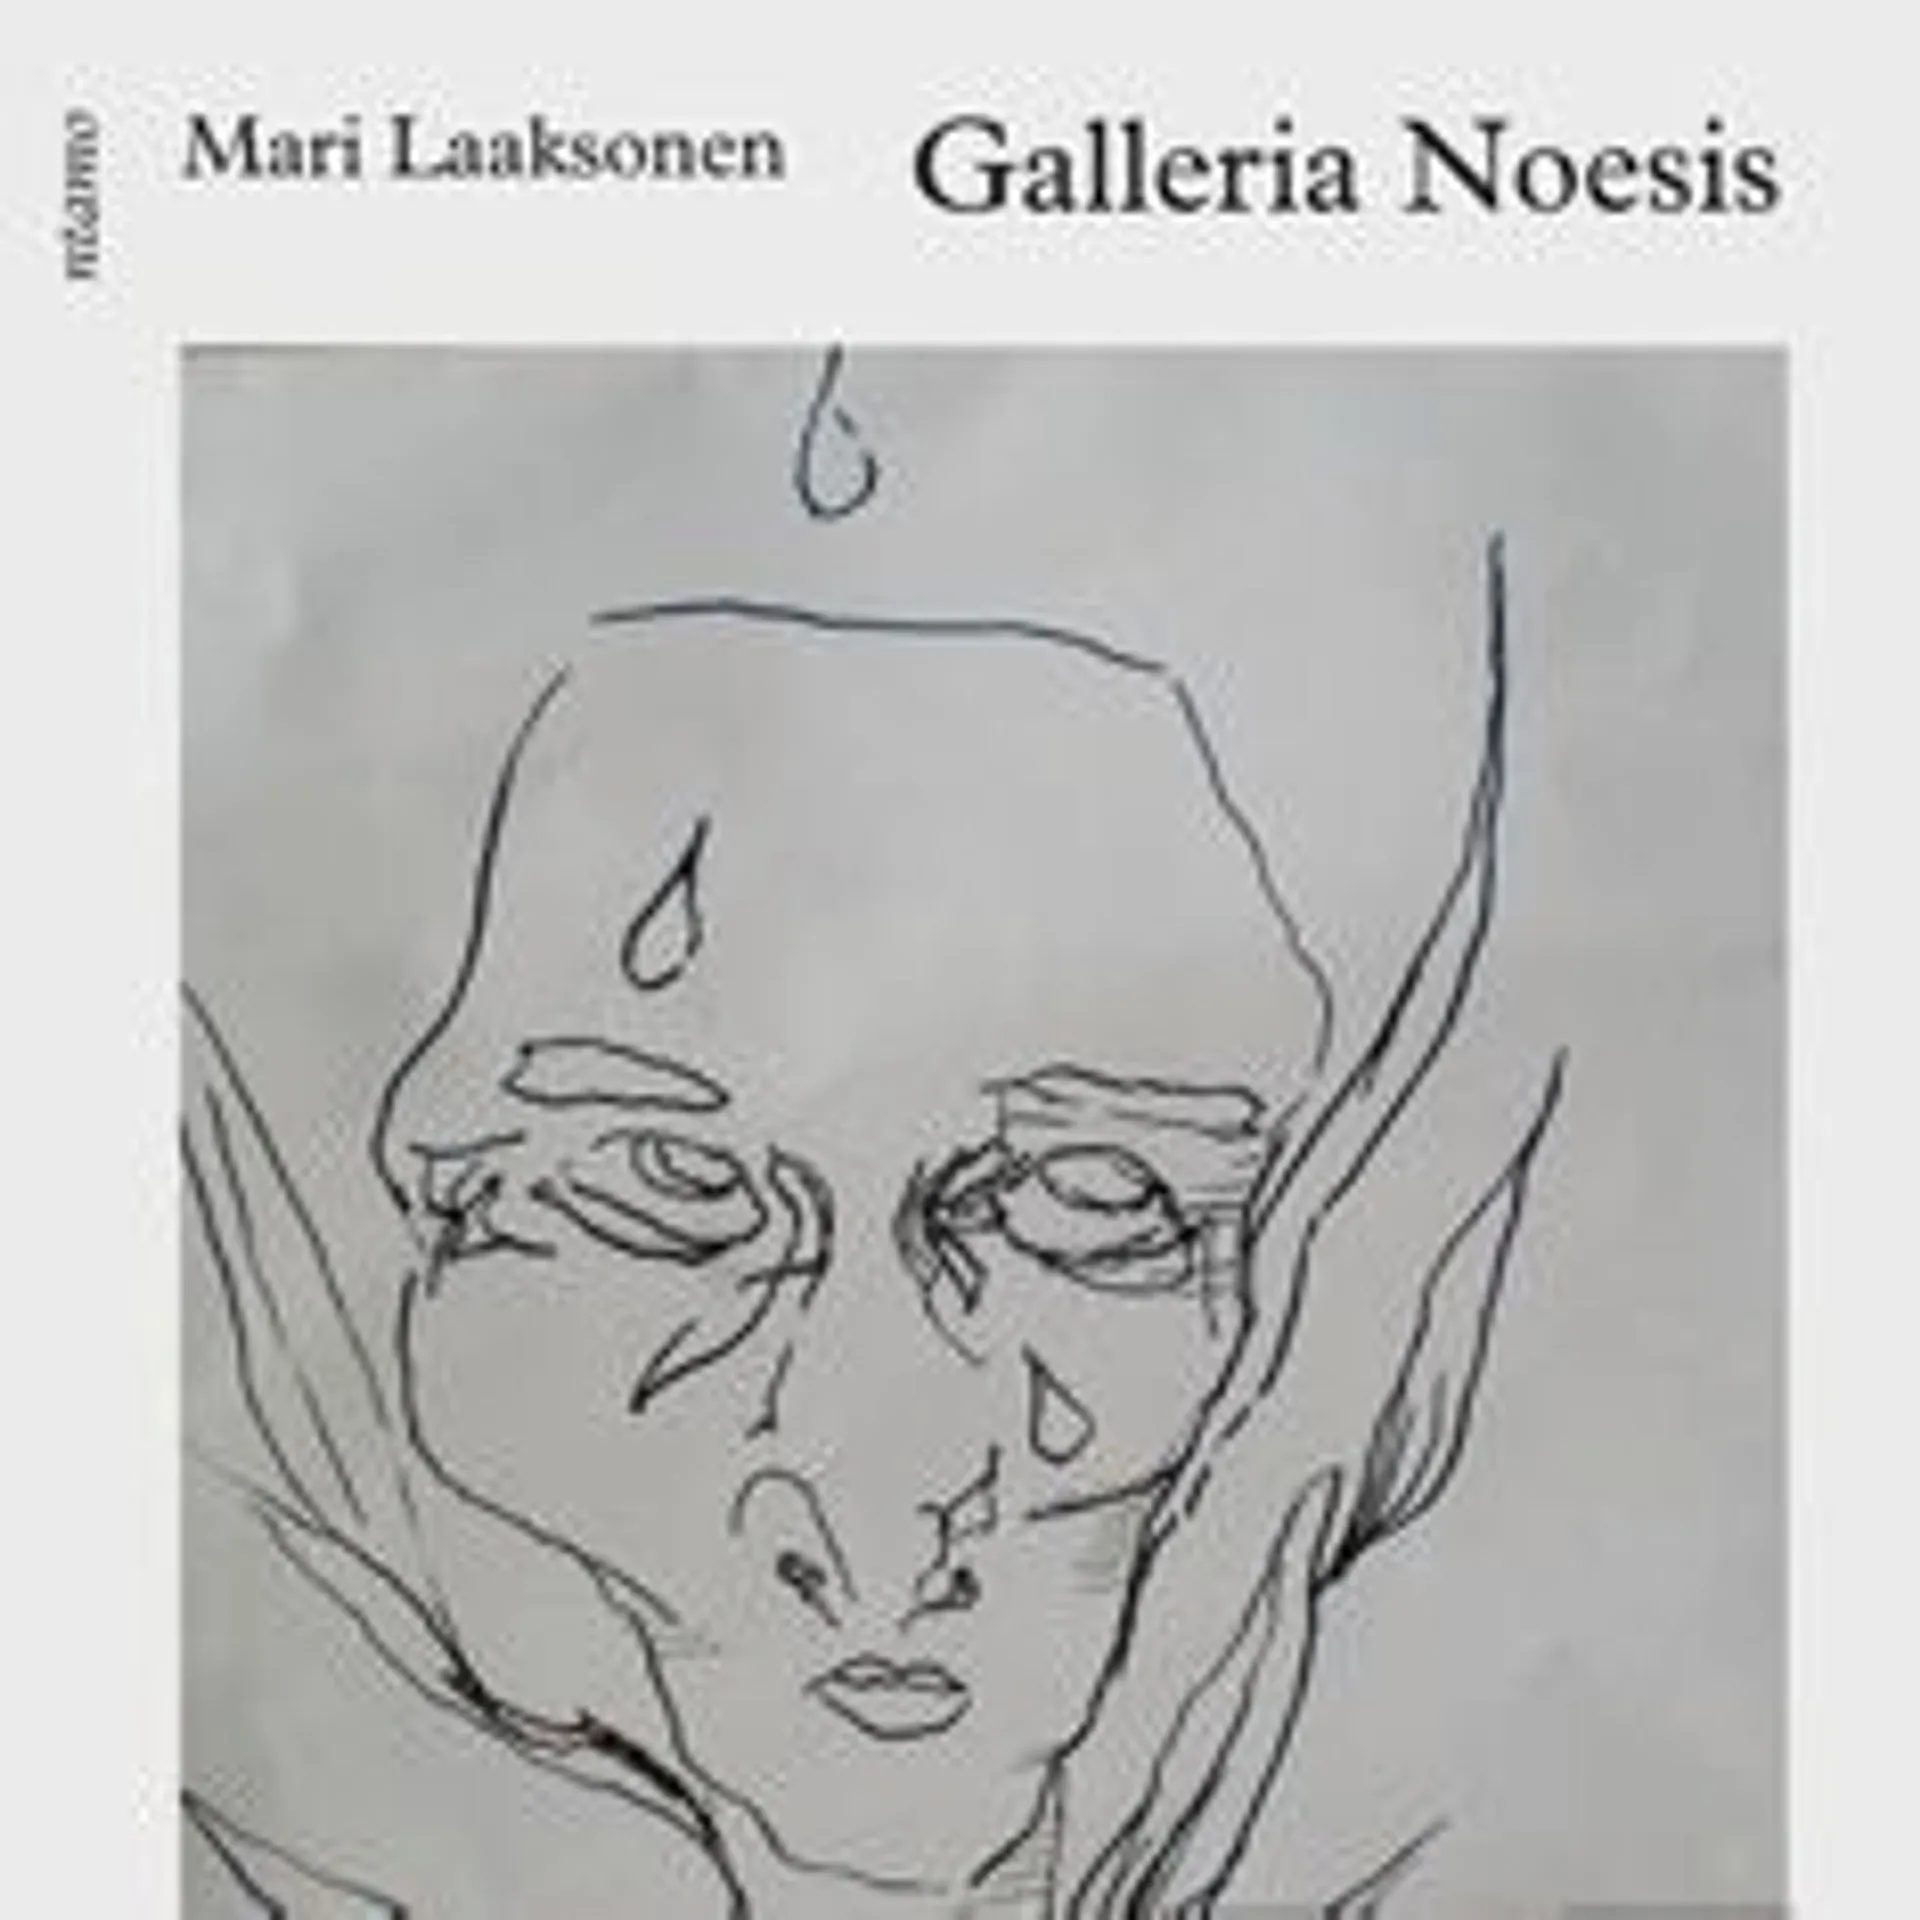 Laaksonen, Galleria Noesis